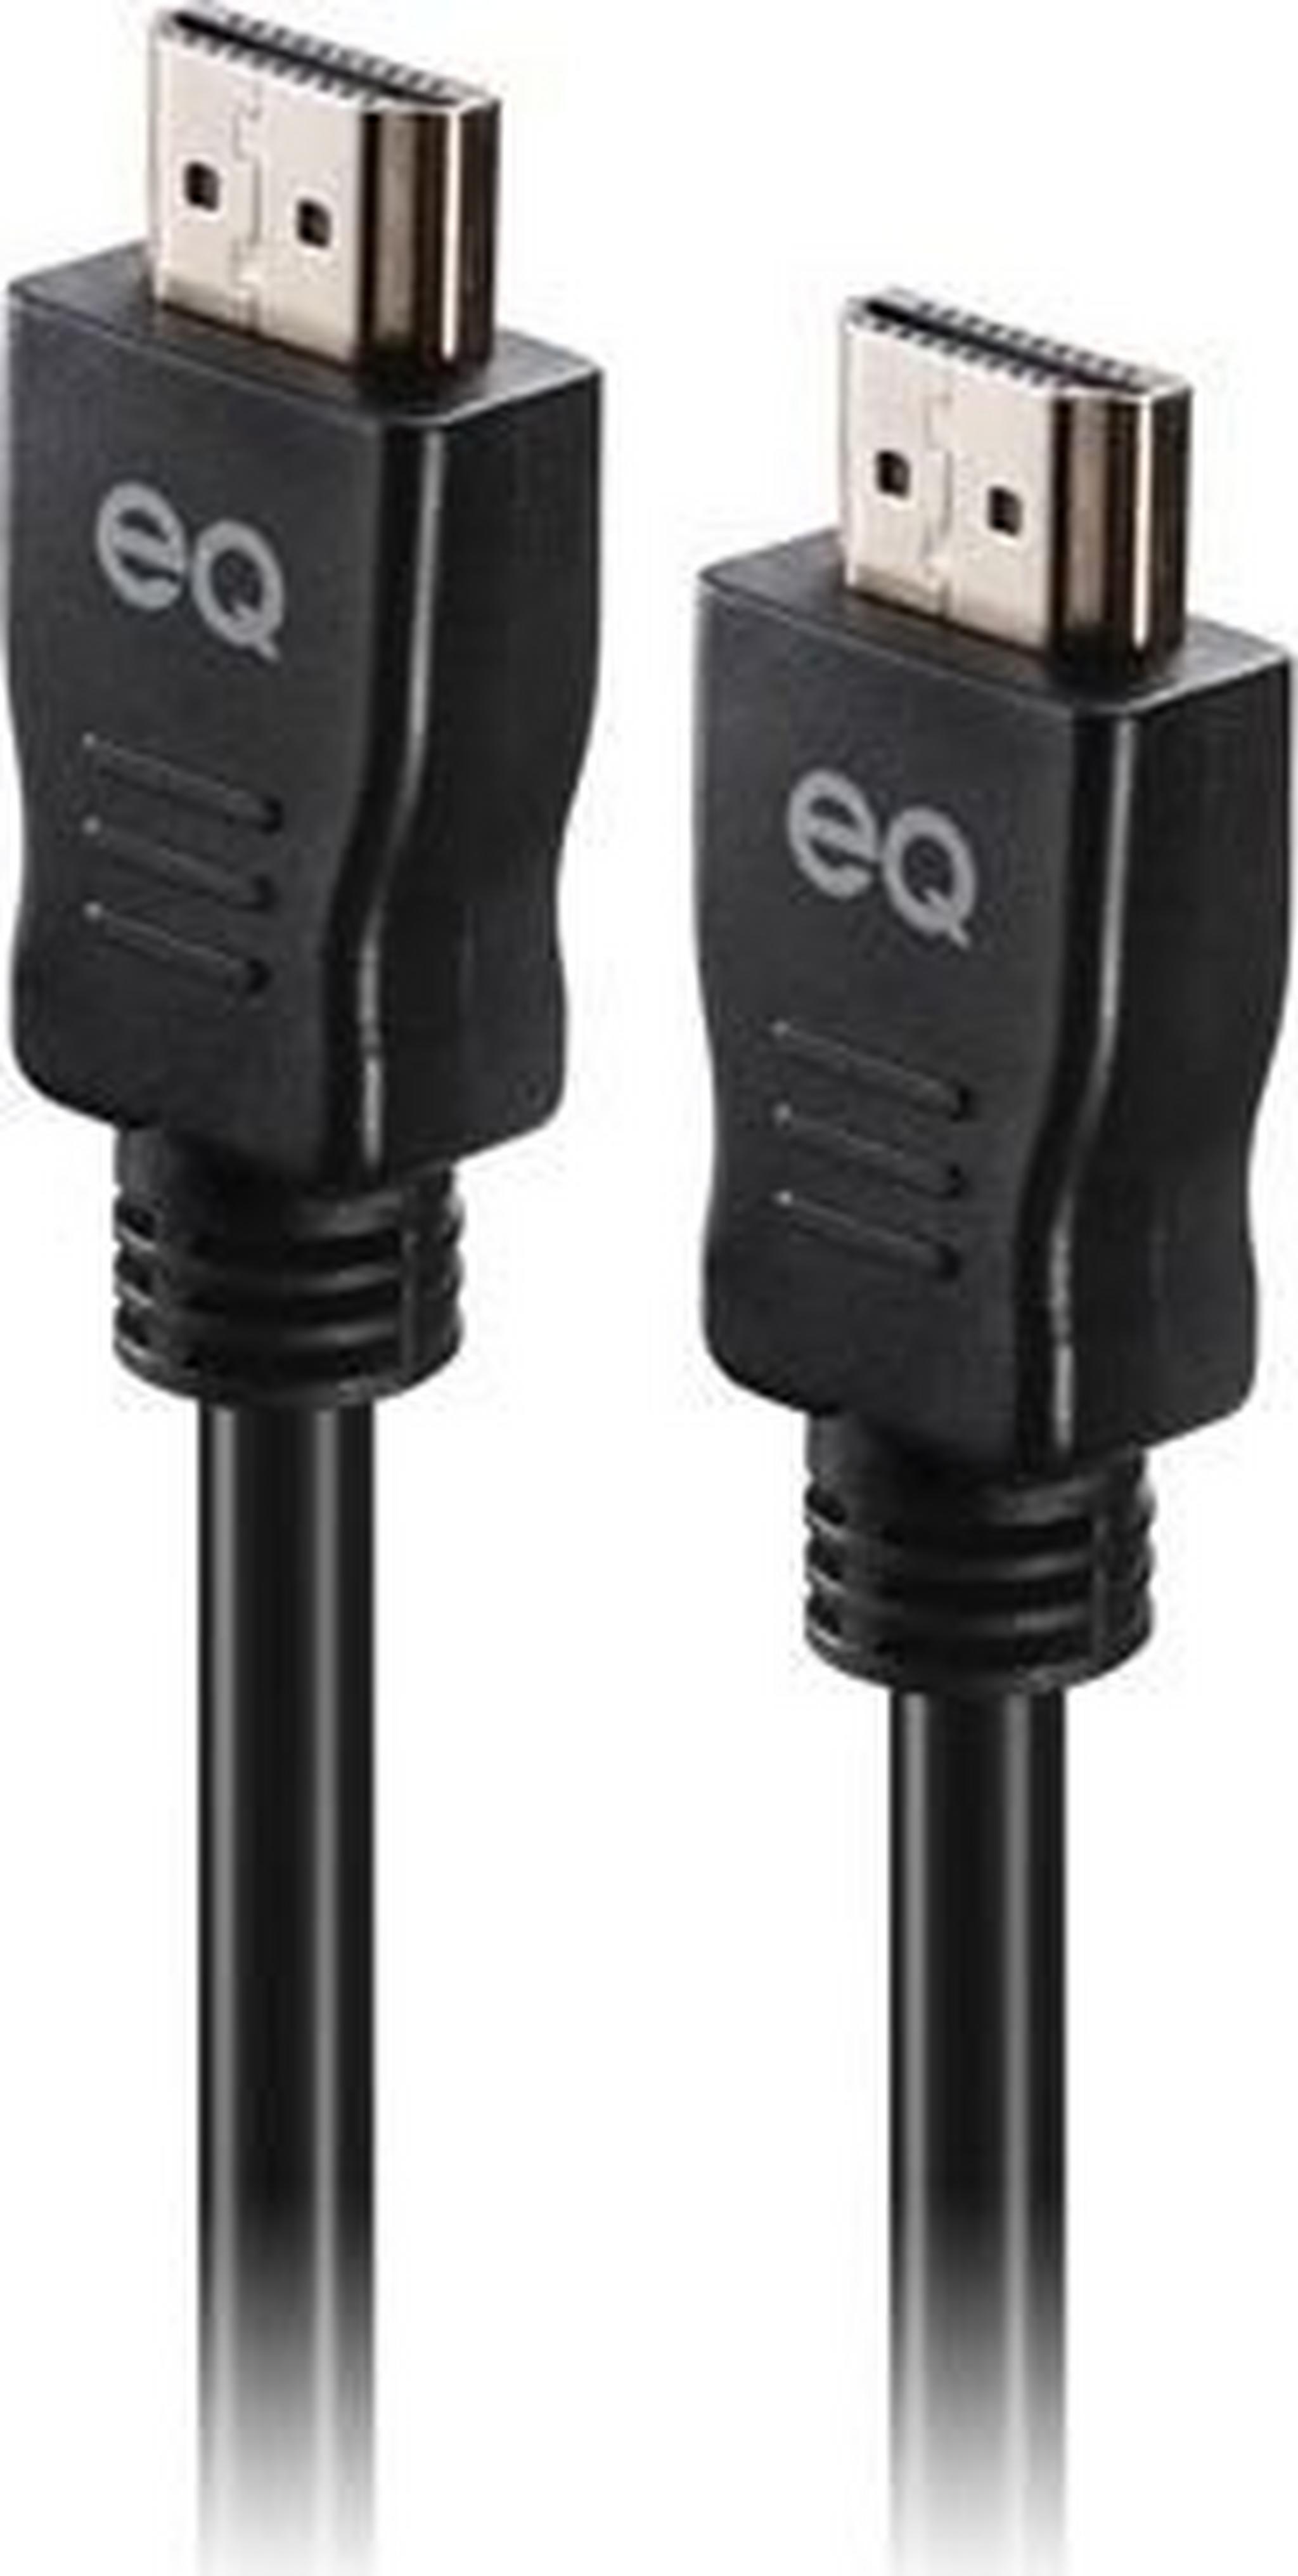 EQ 4K HDMI Cable 1.5M - Black